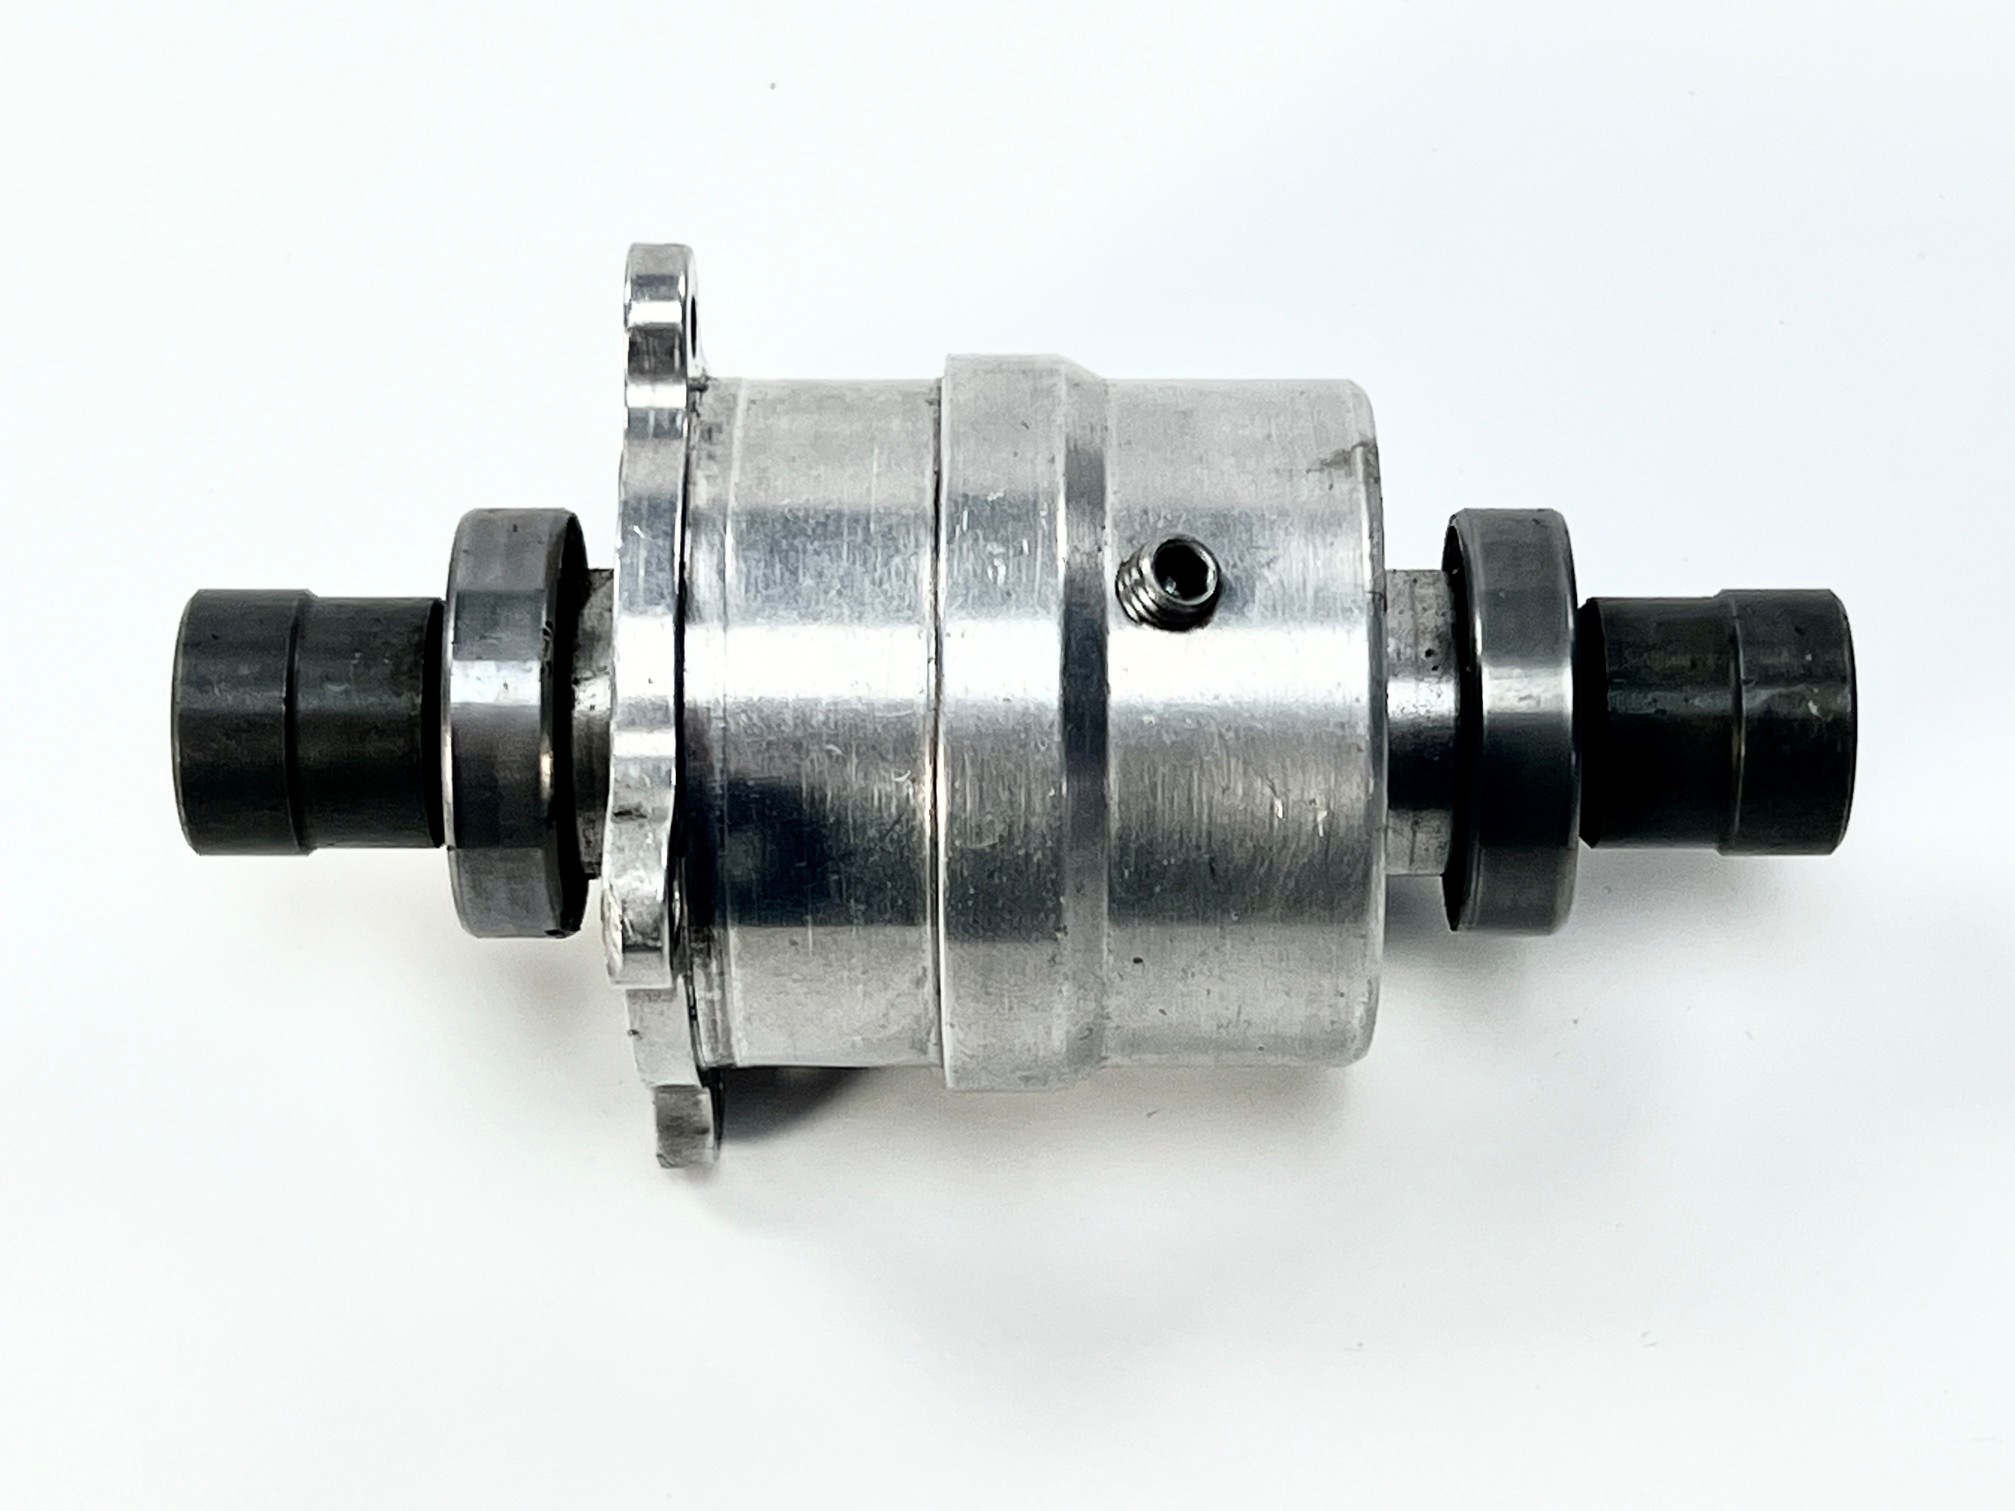 Lauterbacher aluminium differential, used